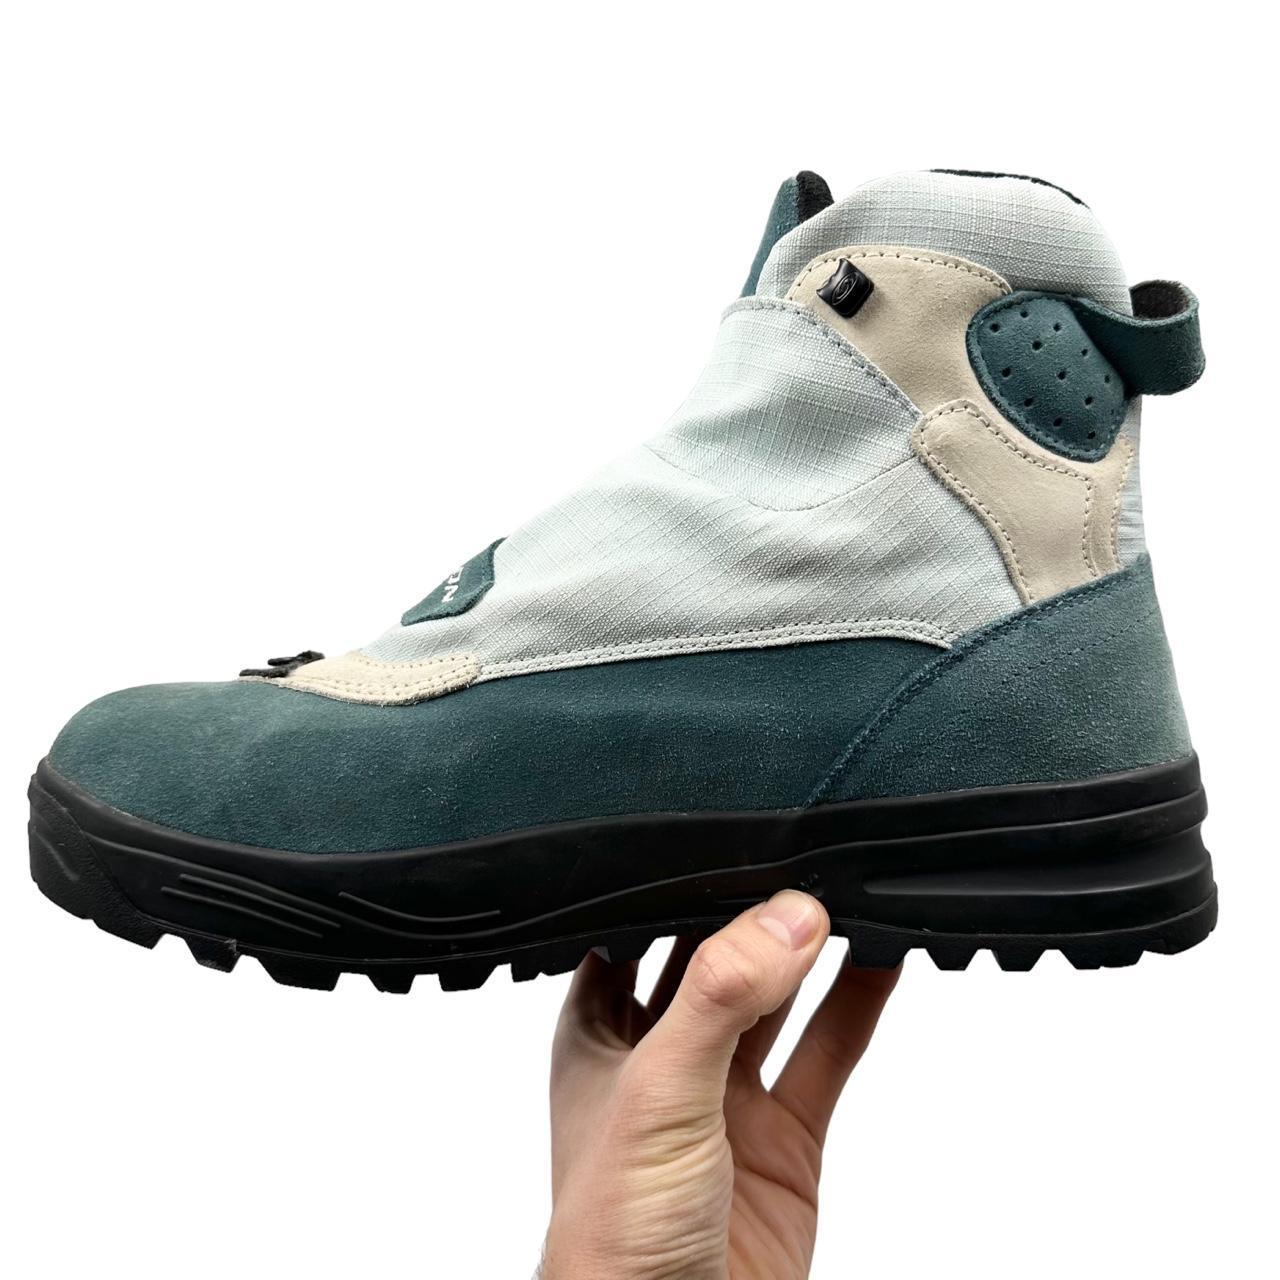 Vintage Salomon Adventure 9 Boots Size UK 11.5 - Known Source